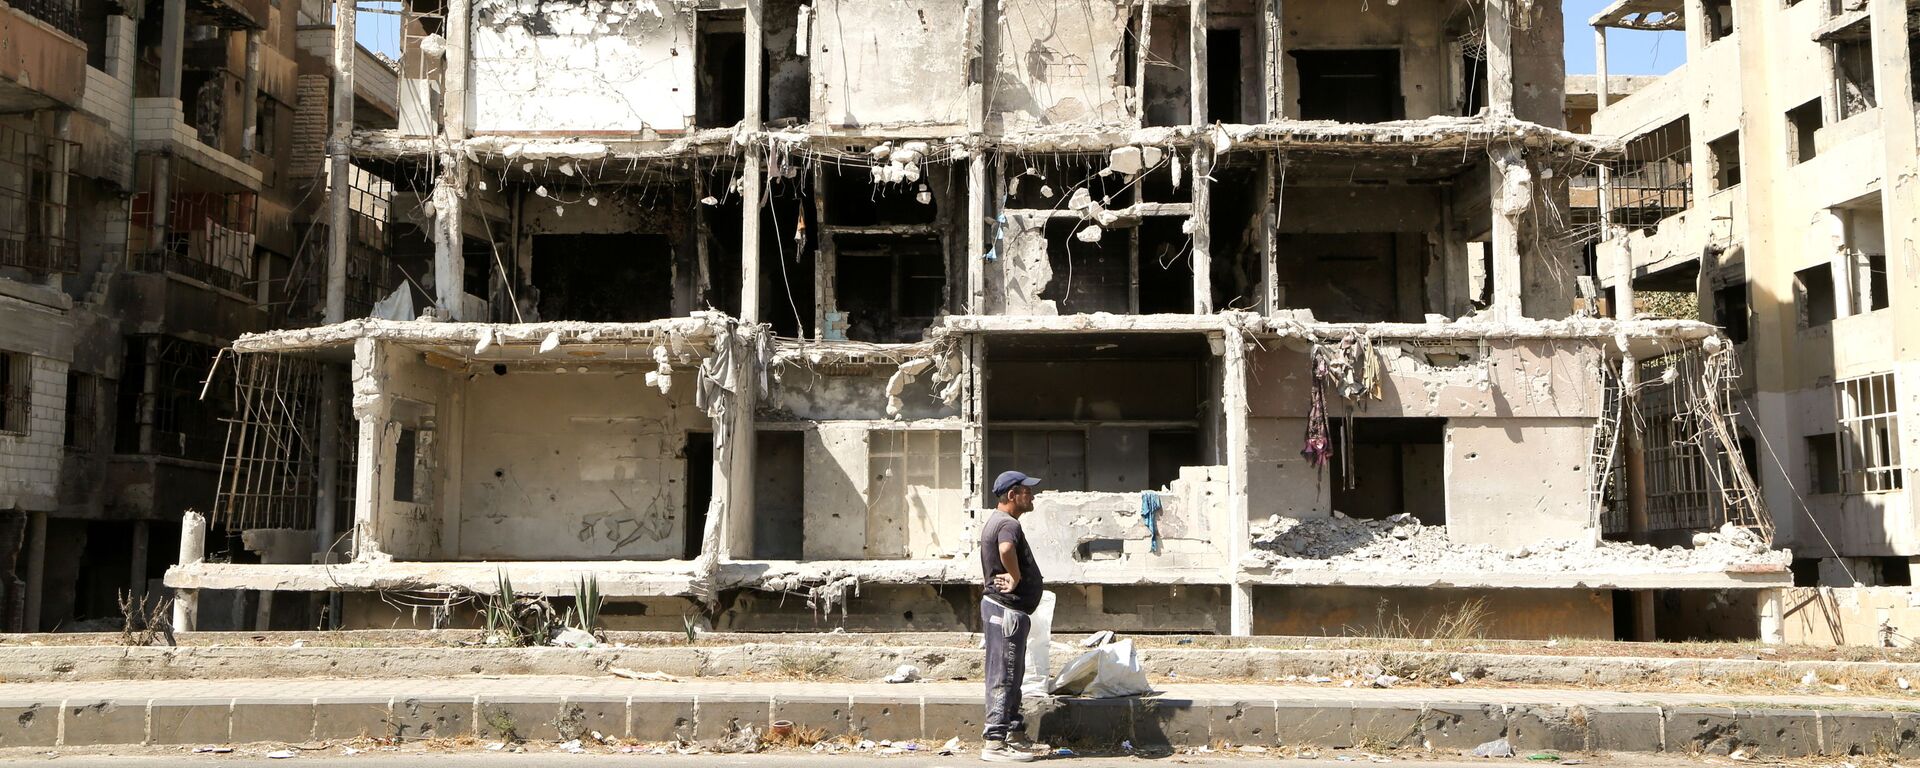 Homem passa por prédio danificado em Homs, Síria, 3 de outubro de 2021 - Sputnik Brasil, 1920, 13.12.2021